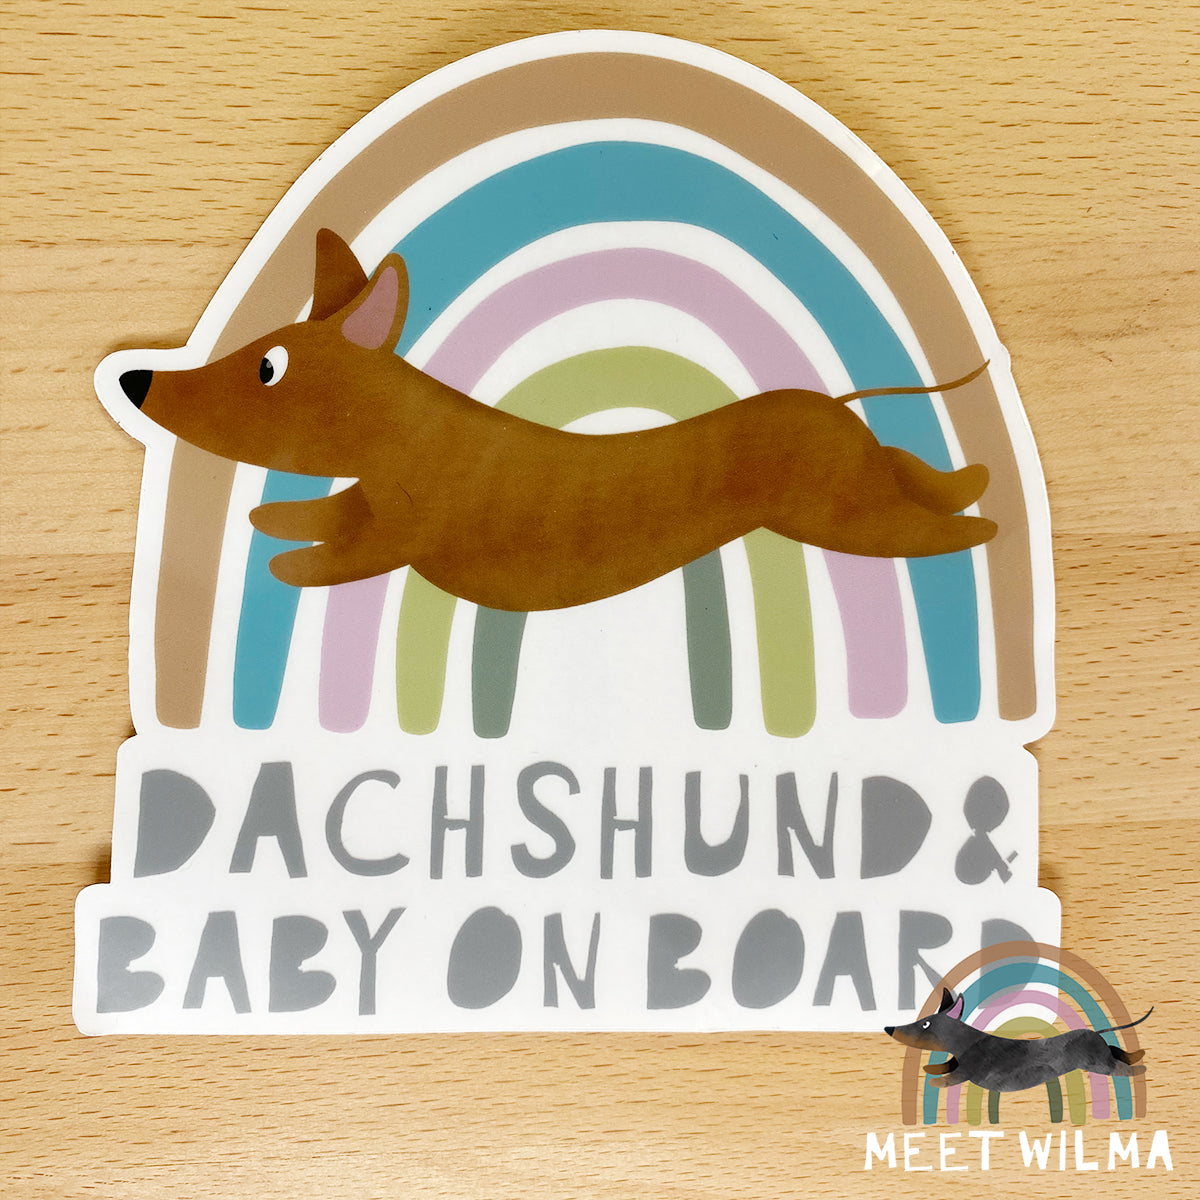 Car Sticker "Dachshund & Baby On Board"